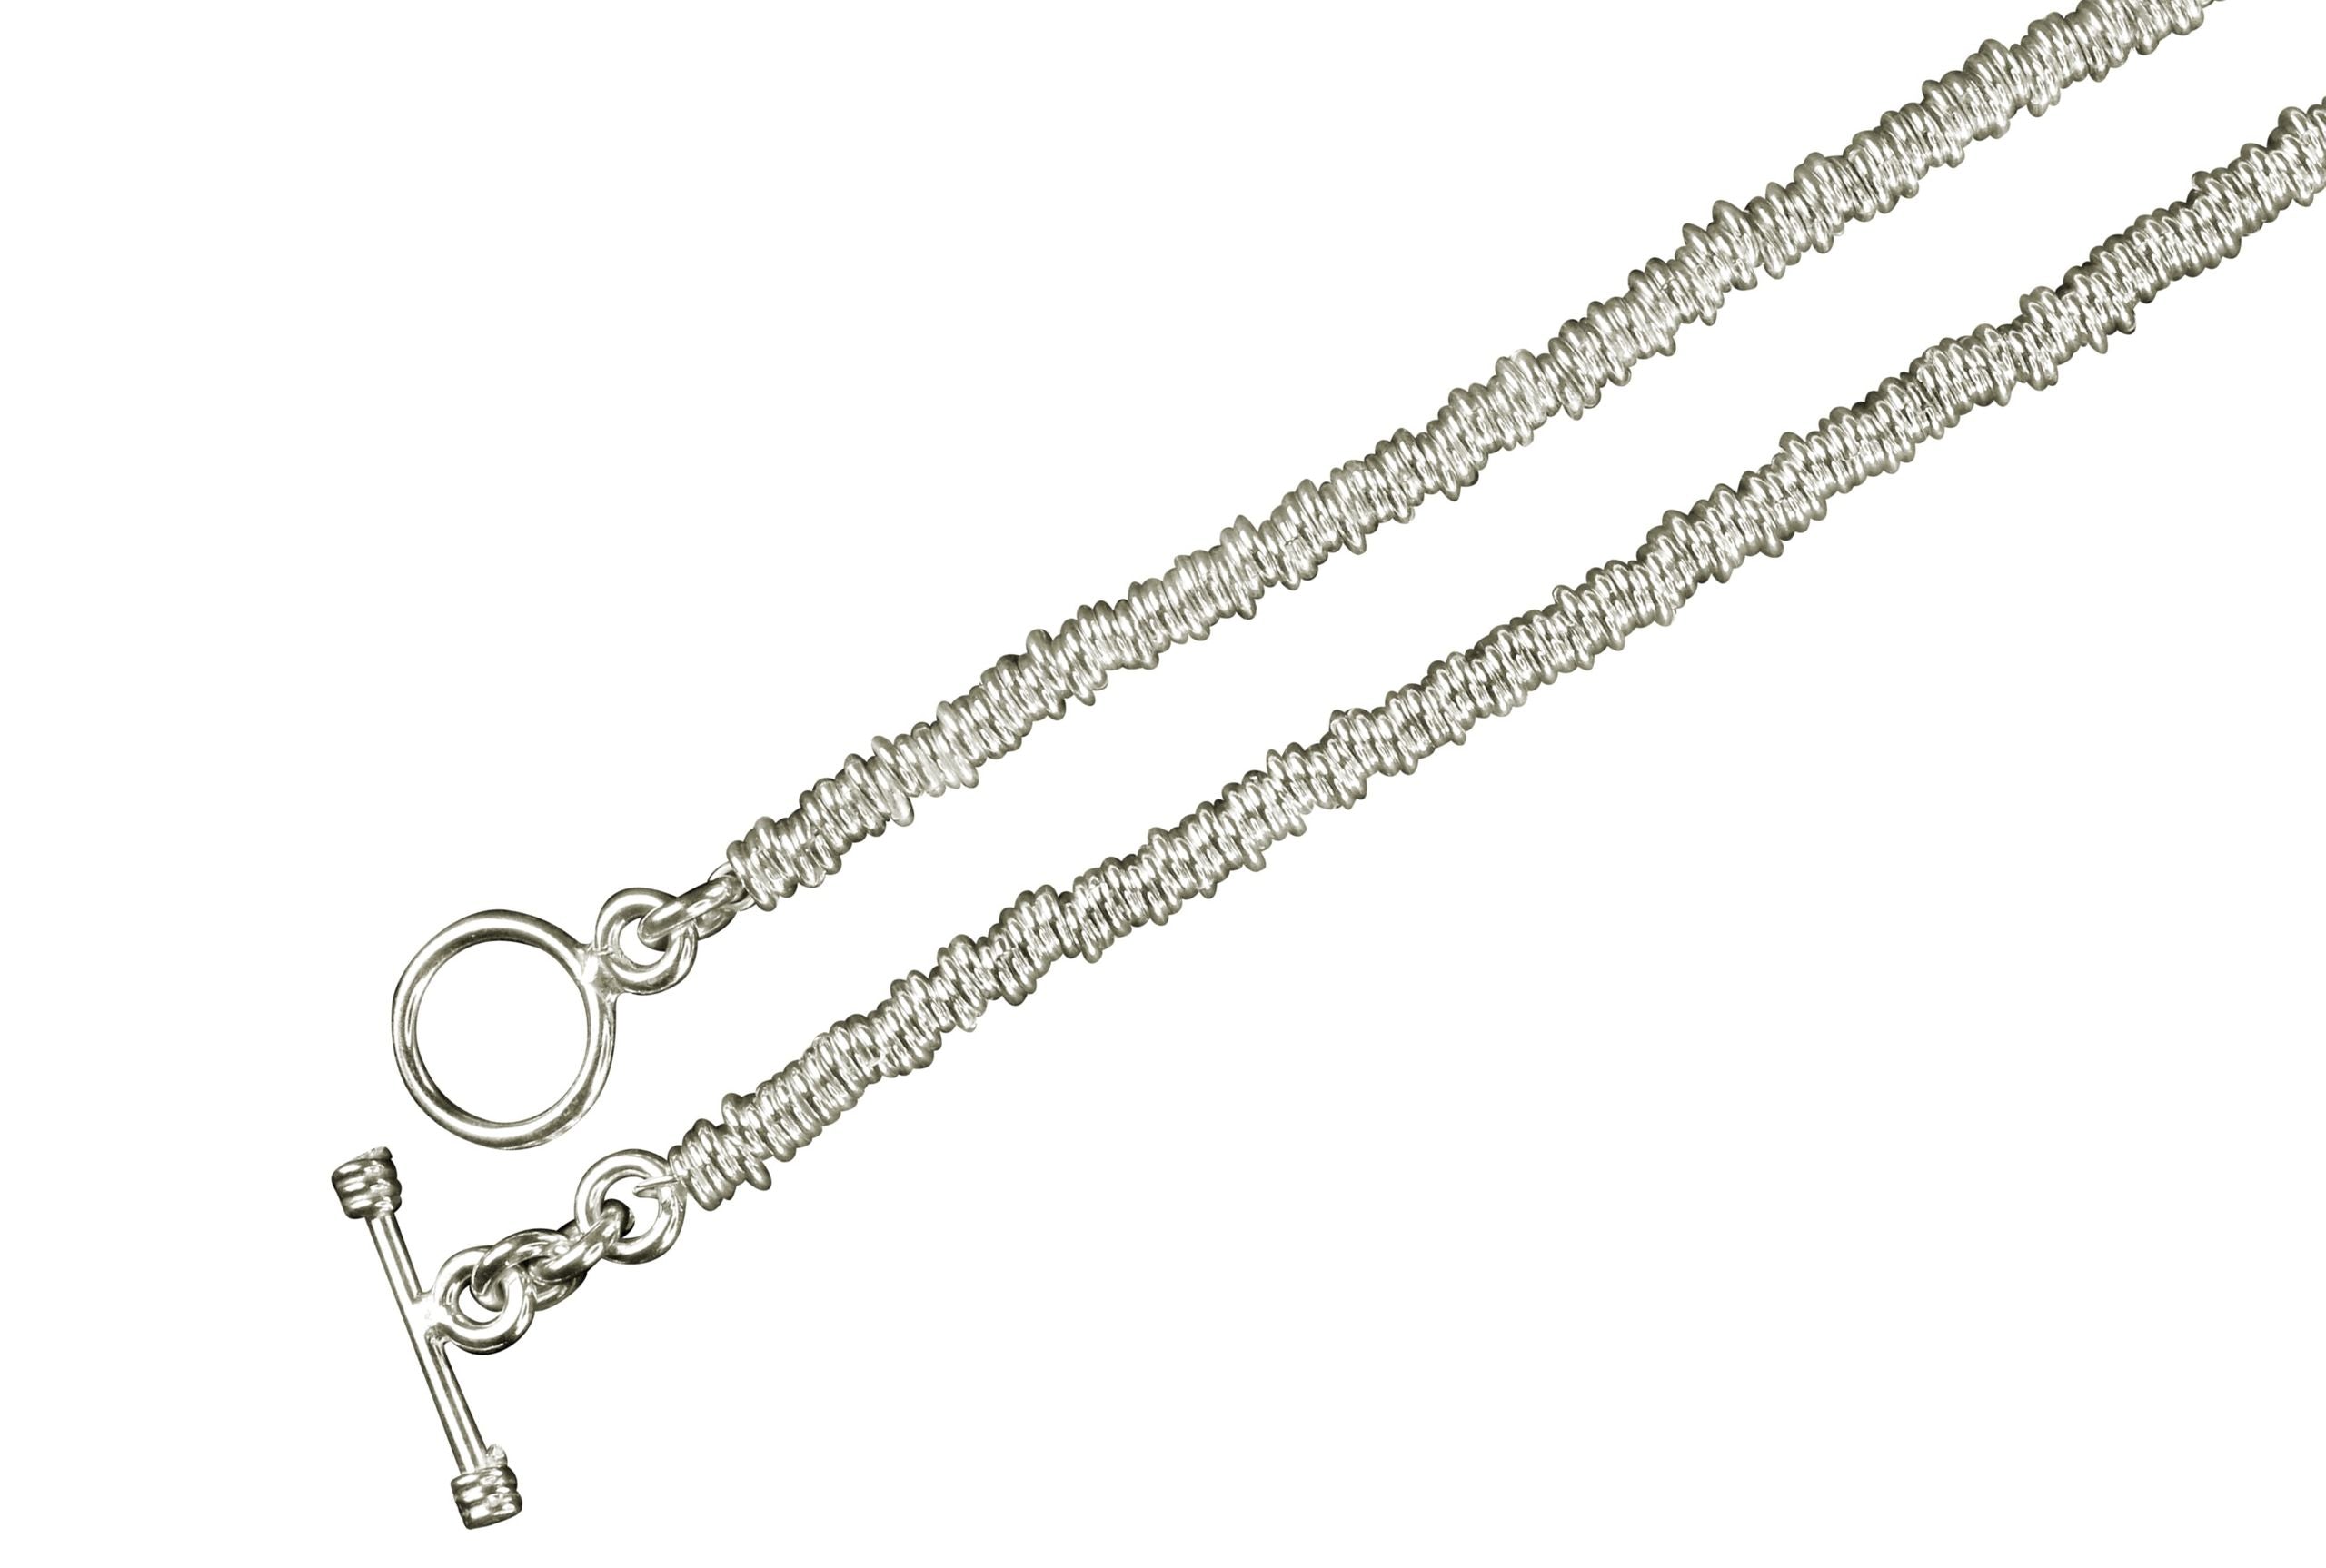 Eine Kette für Damen bestehend aus vielen kleinen Ringen aus Silber mit einem dekorativen Verschluss.